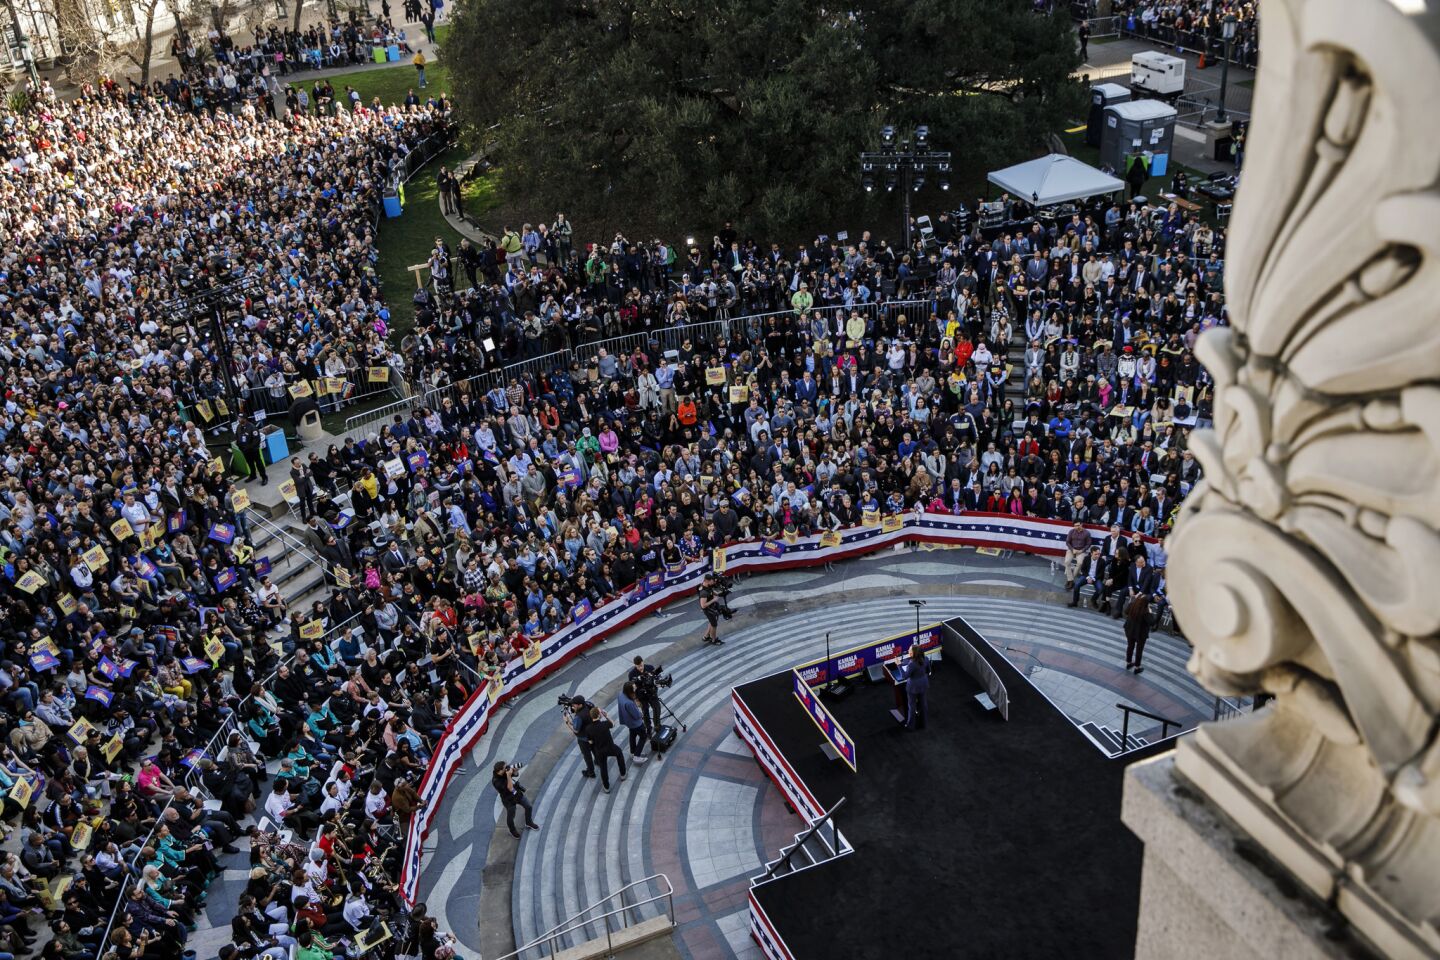 A sizable crowd attends the speech by Sen. Kamala Harris in Oakland.